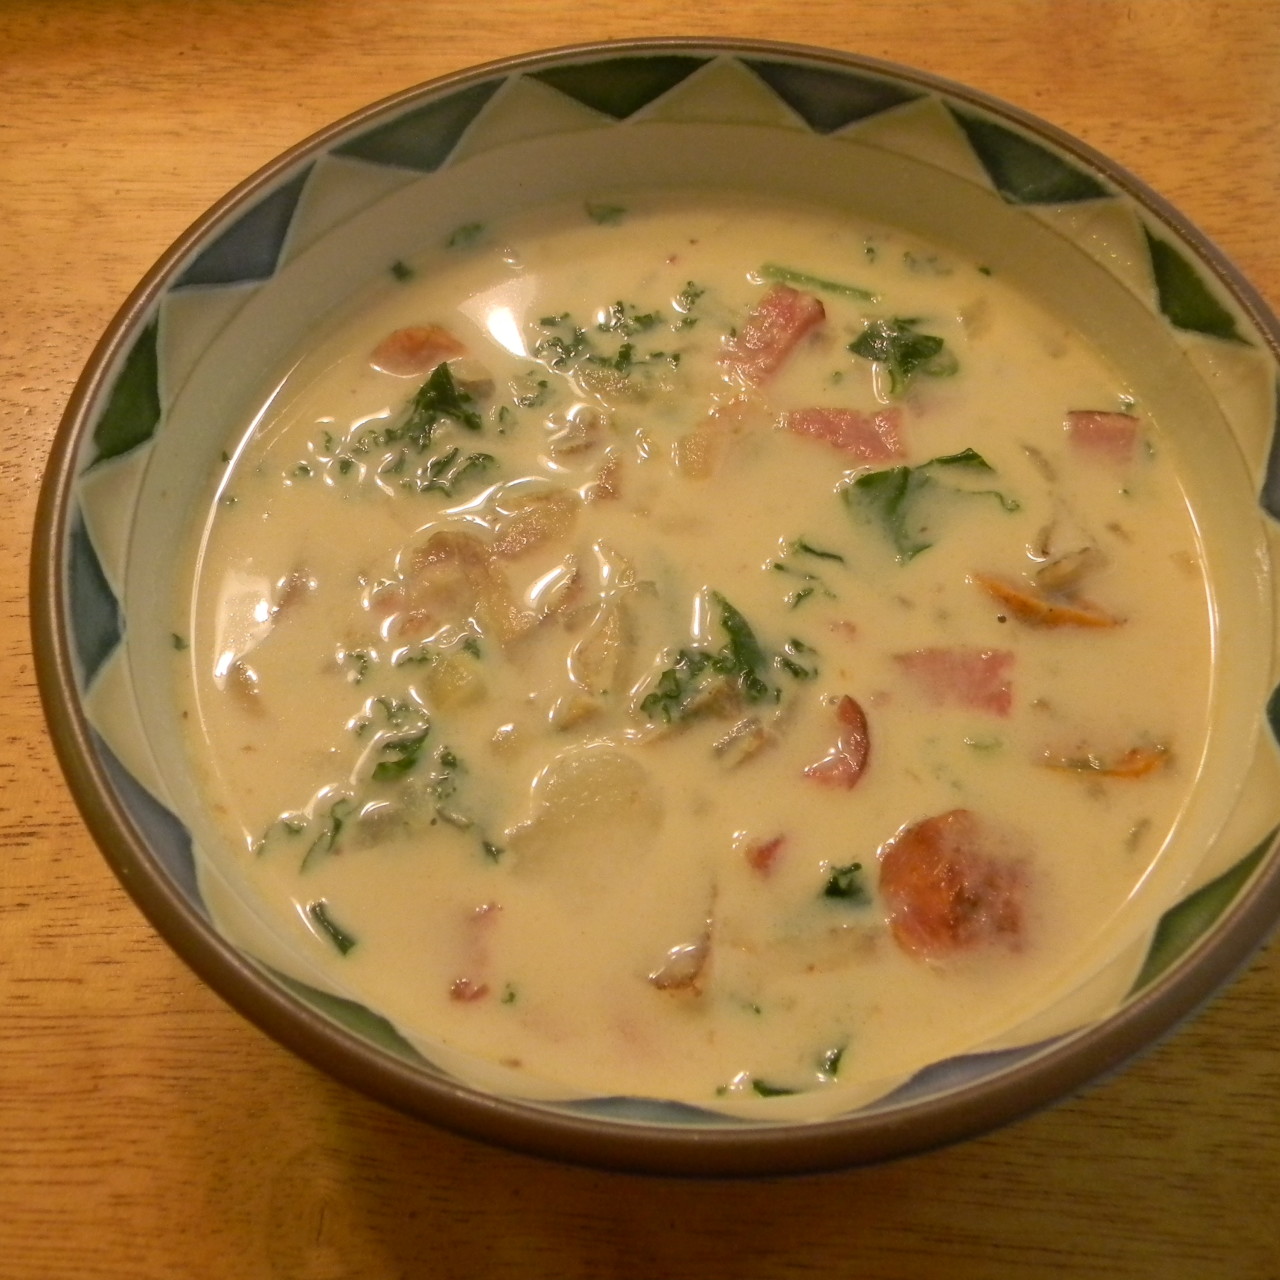 Zuppa Toscana Soup